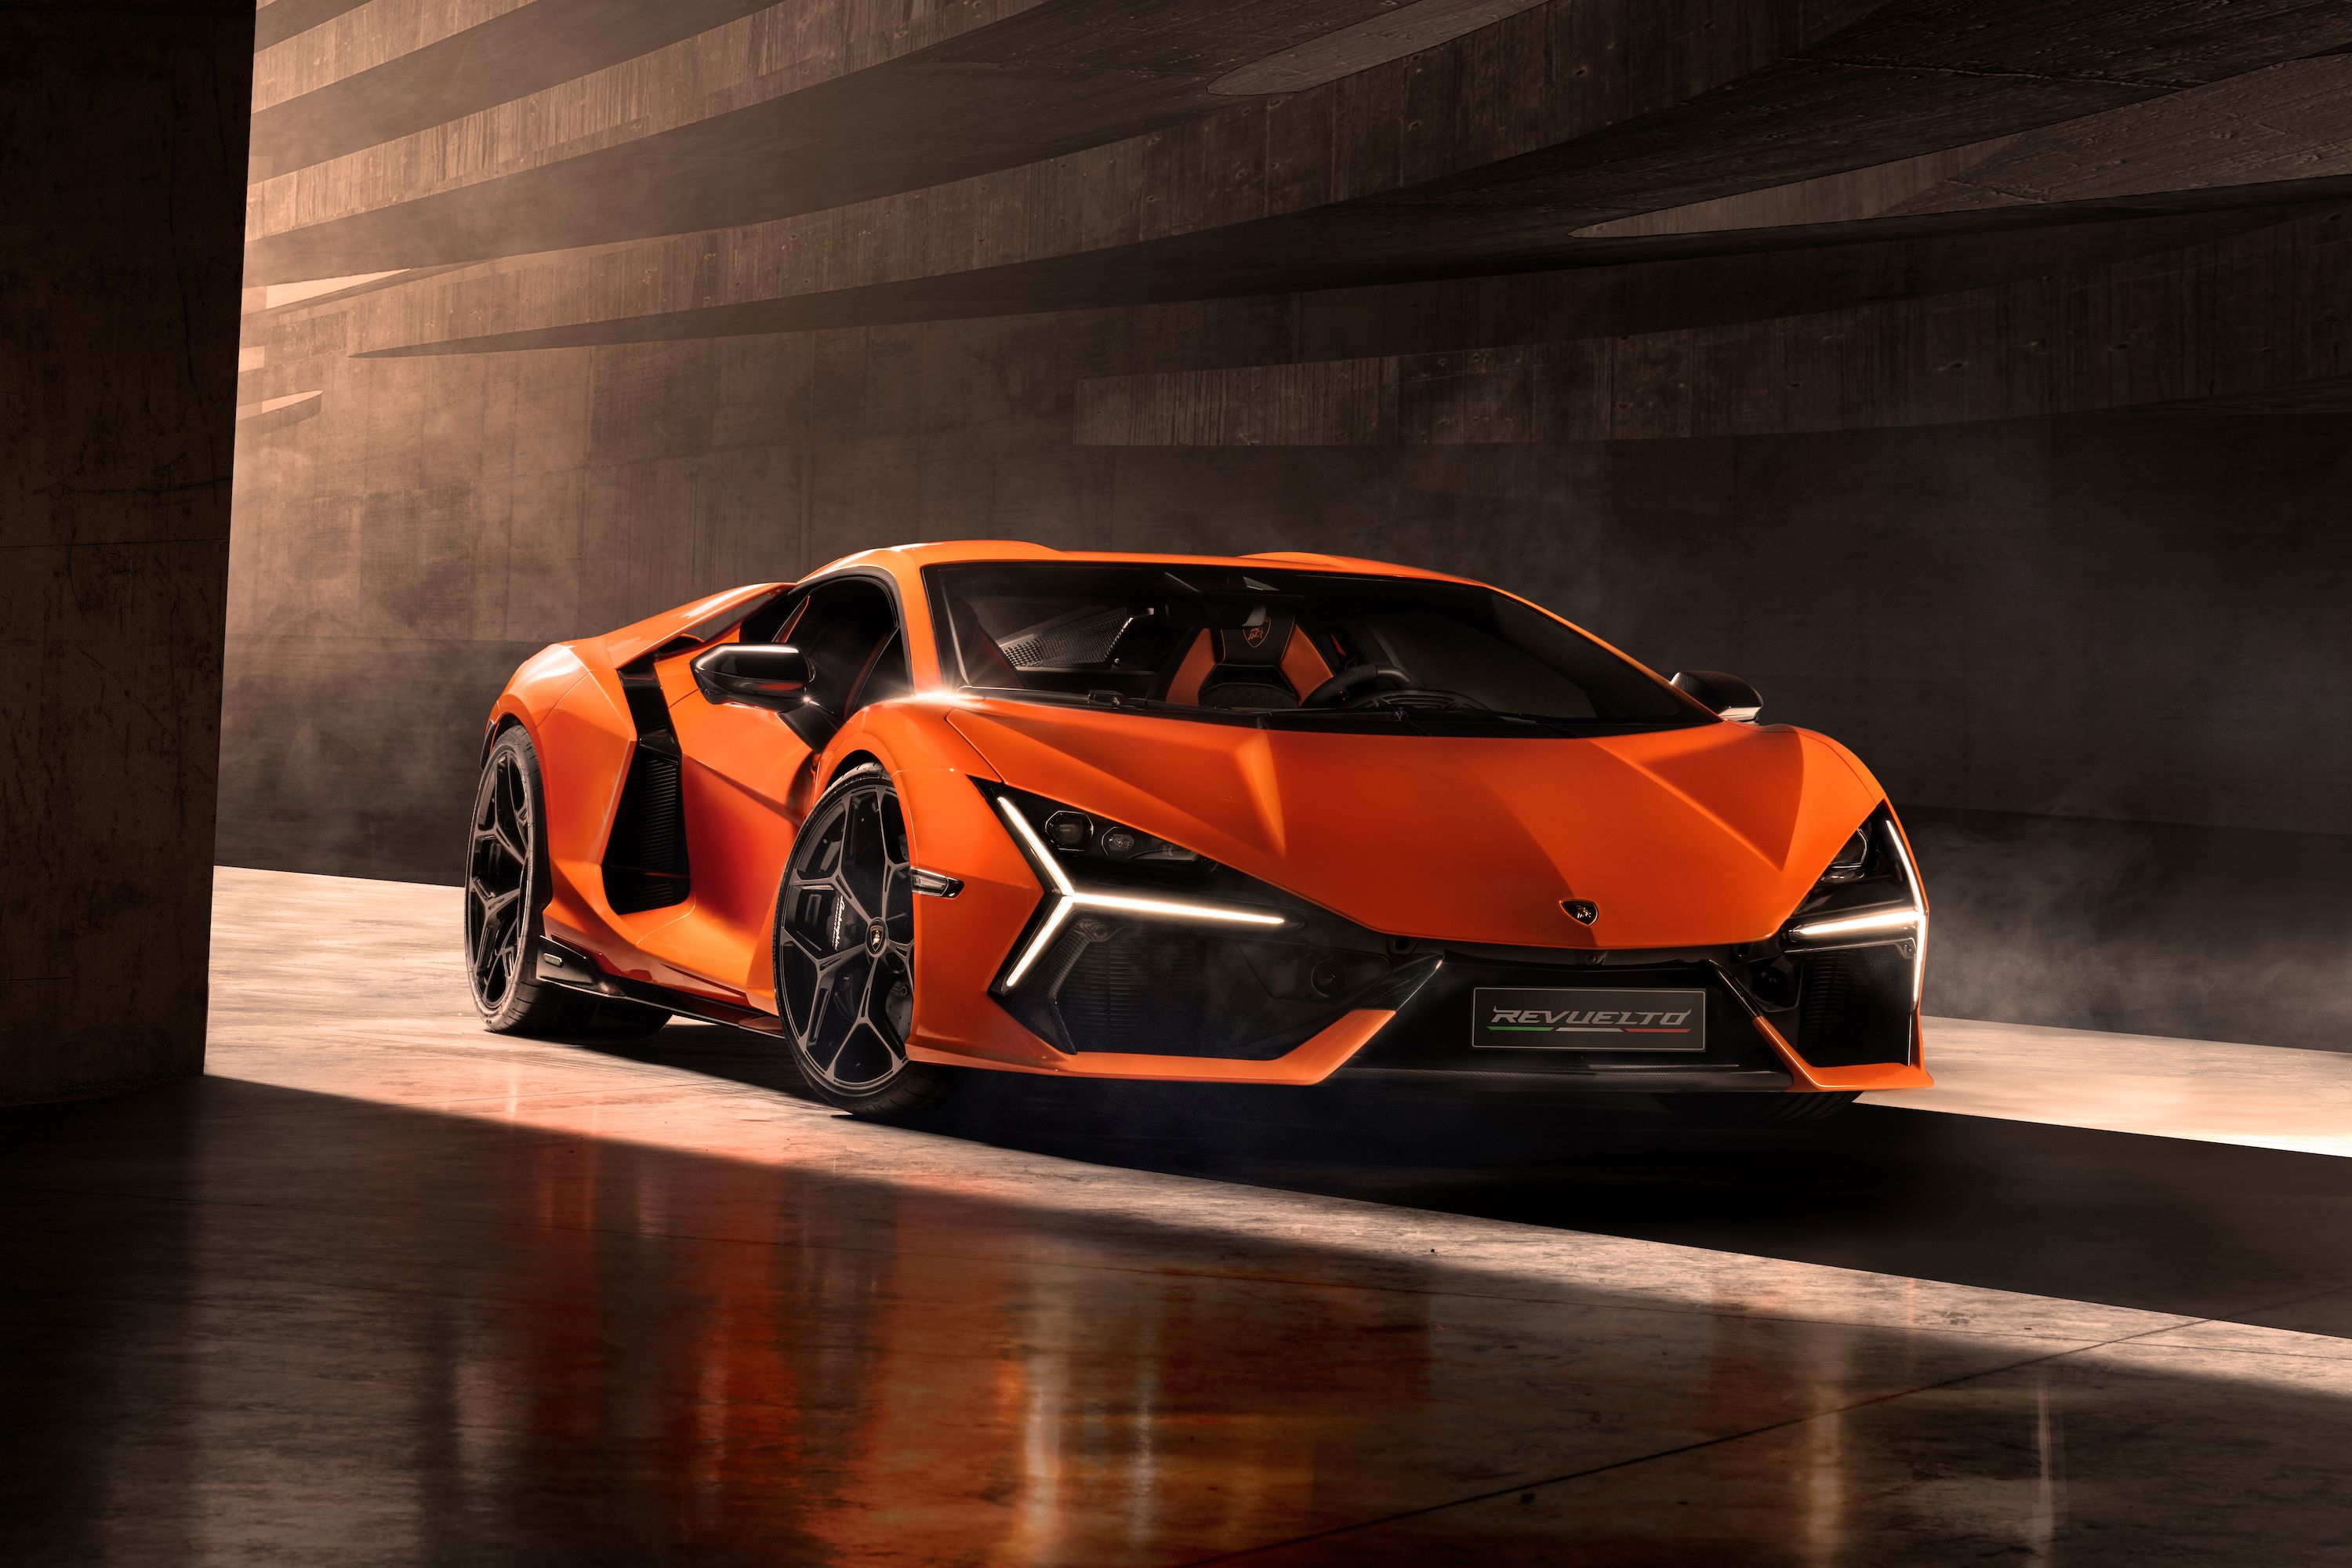 2024 Lamborghini Revuelto: What We Know So Far